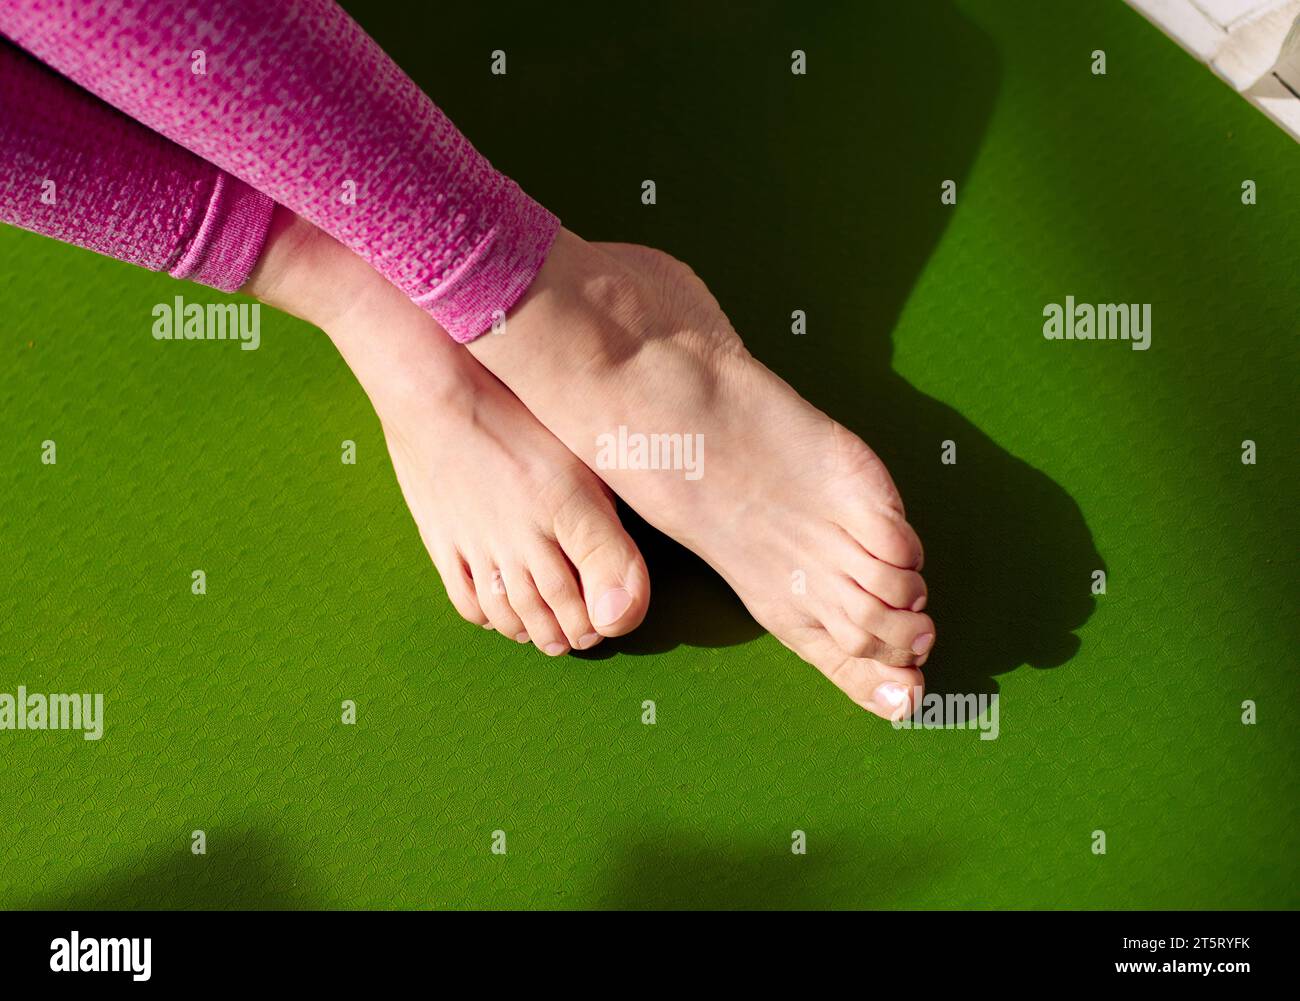 Nach einer Massage, um Muskelstress zu lindern, entspannen sich die Füße einer Frau auf einer grünen Yogamatte. Verringerung von Muskelkater, Erhöhung des Blutflusses. Ph Stockfoto